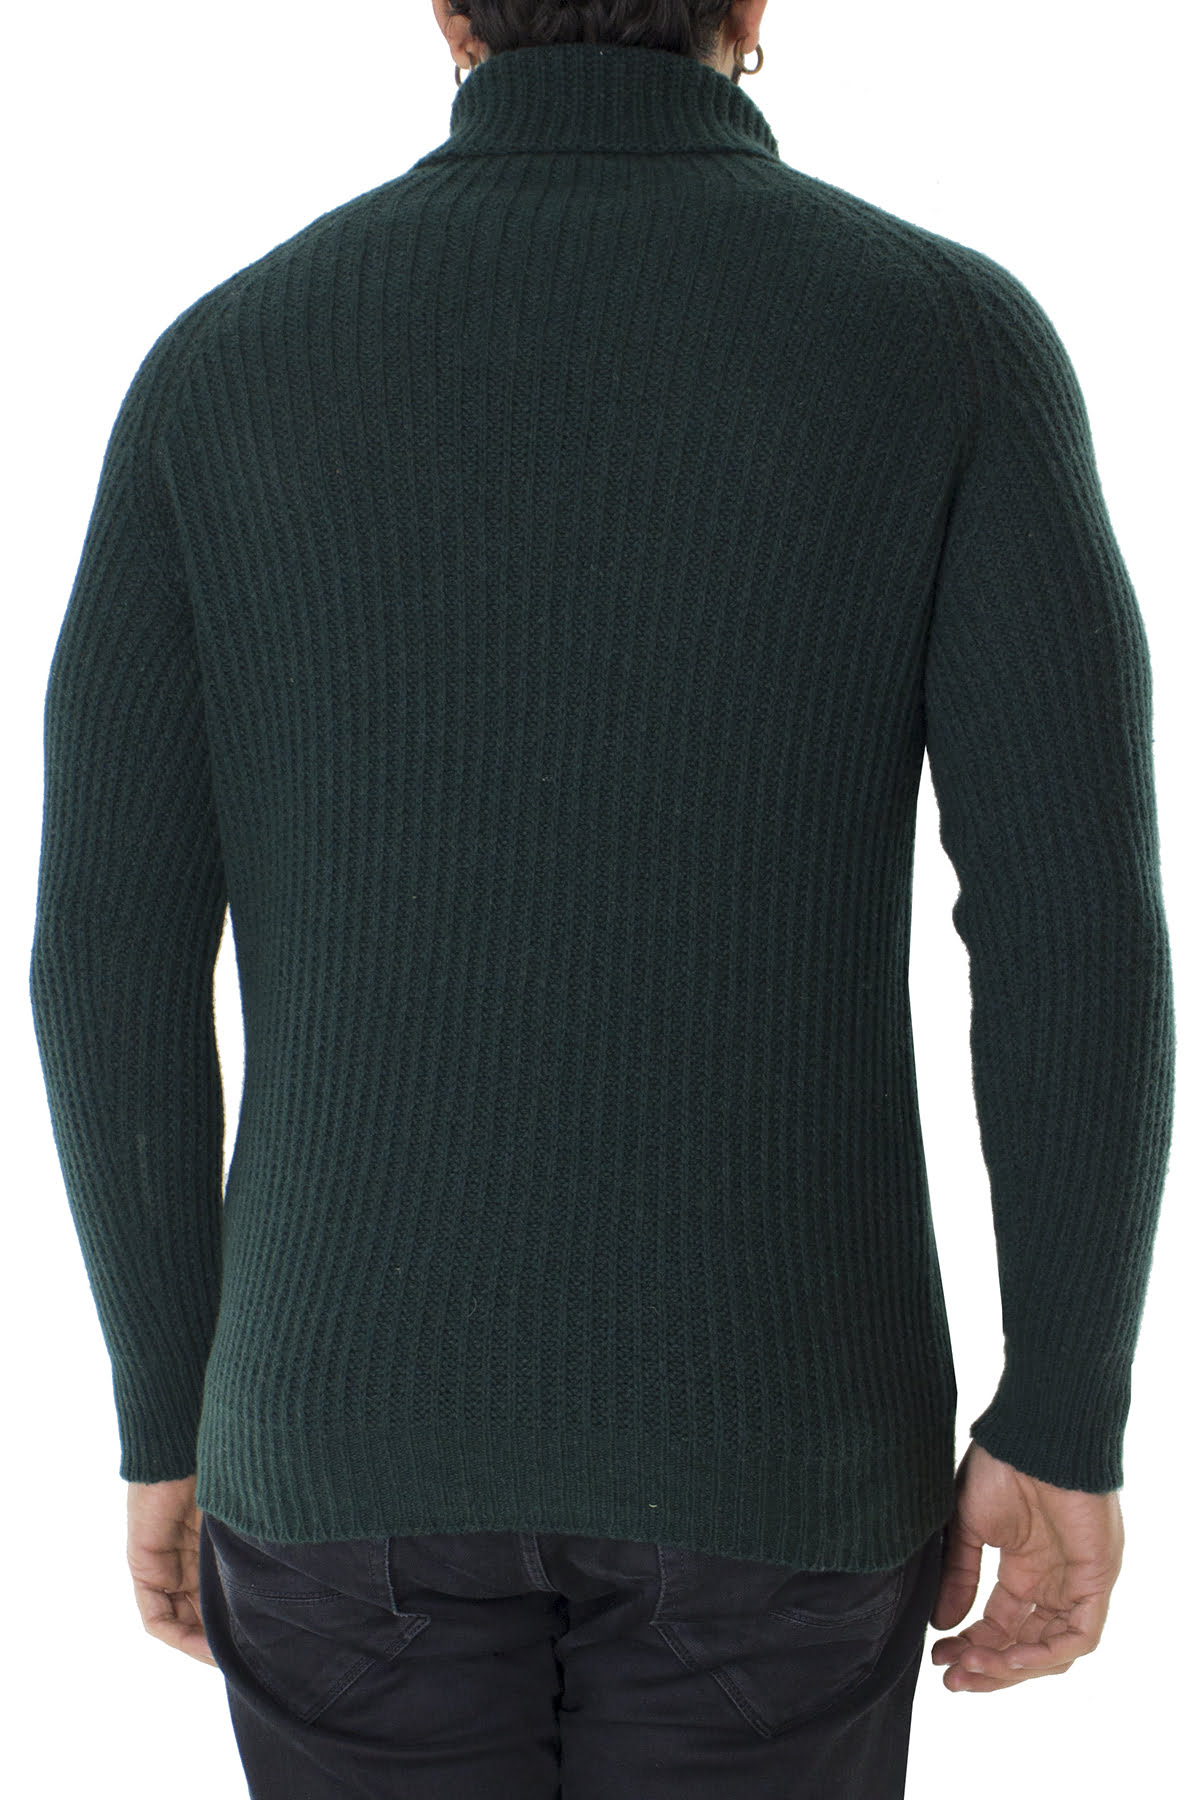 Maglione uomo collo alto verde in lana merinos a costa inglese slim fit made in italy